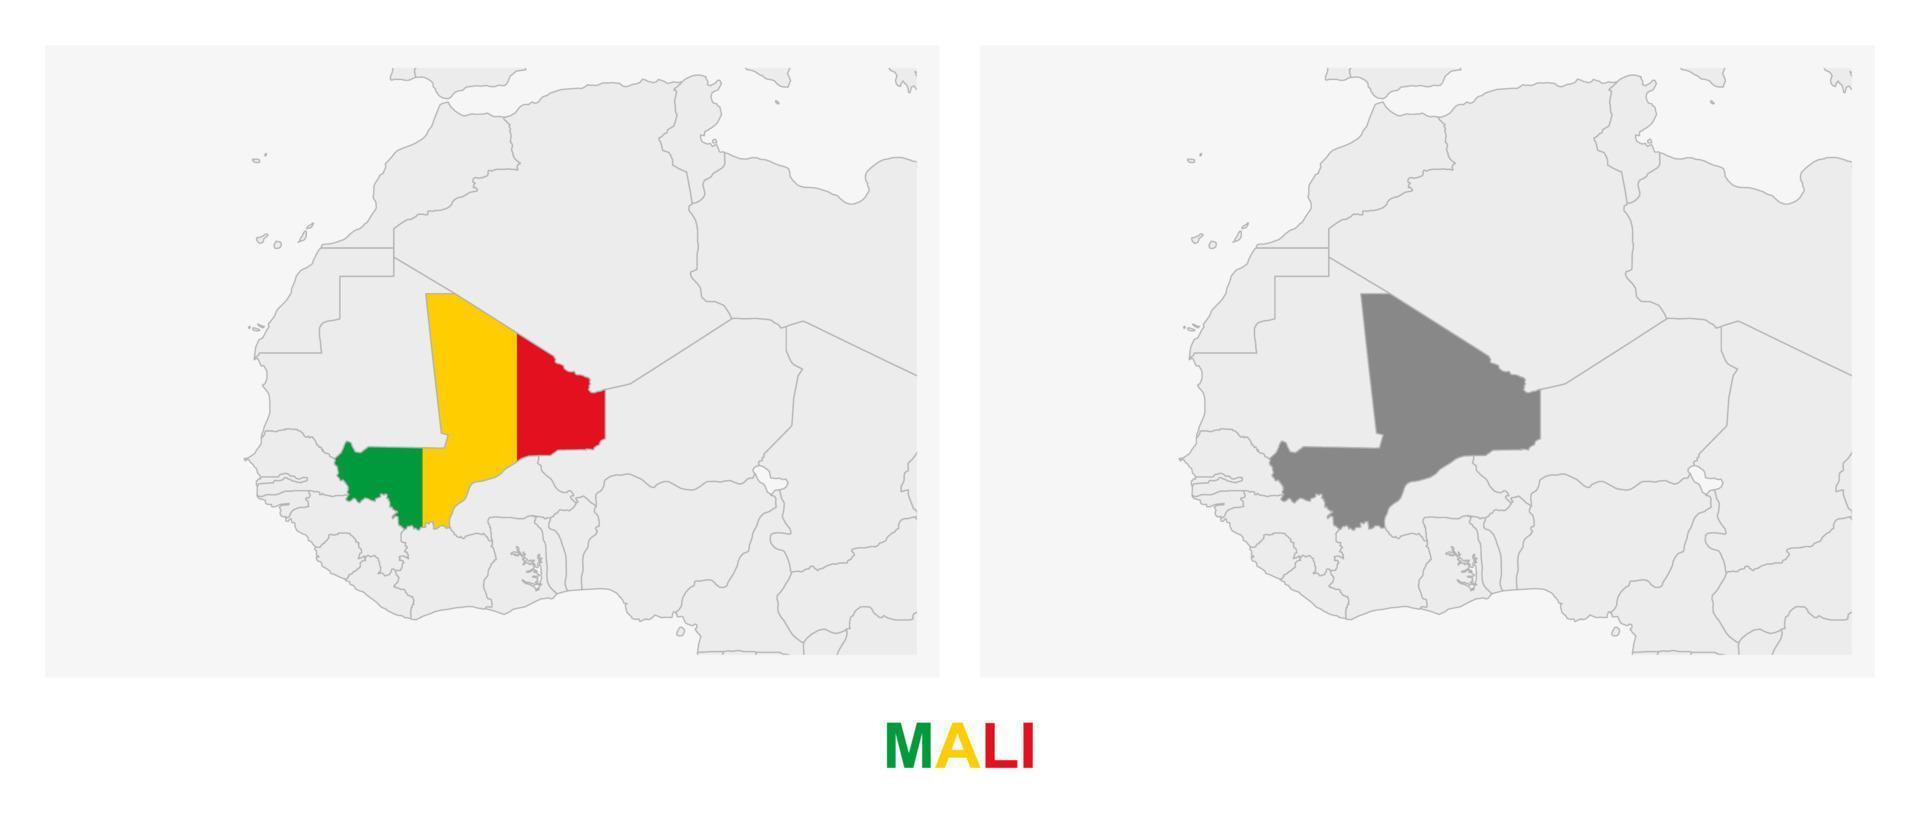 duas versões do mapa do mali, com a bandeira do mali e destacadas em cinza escuro. vetor